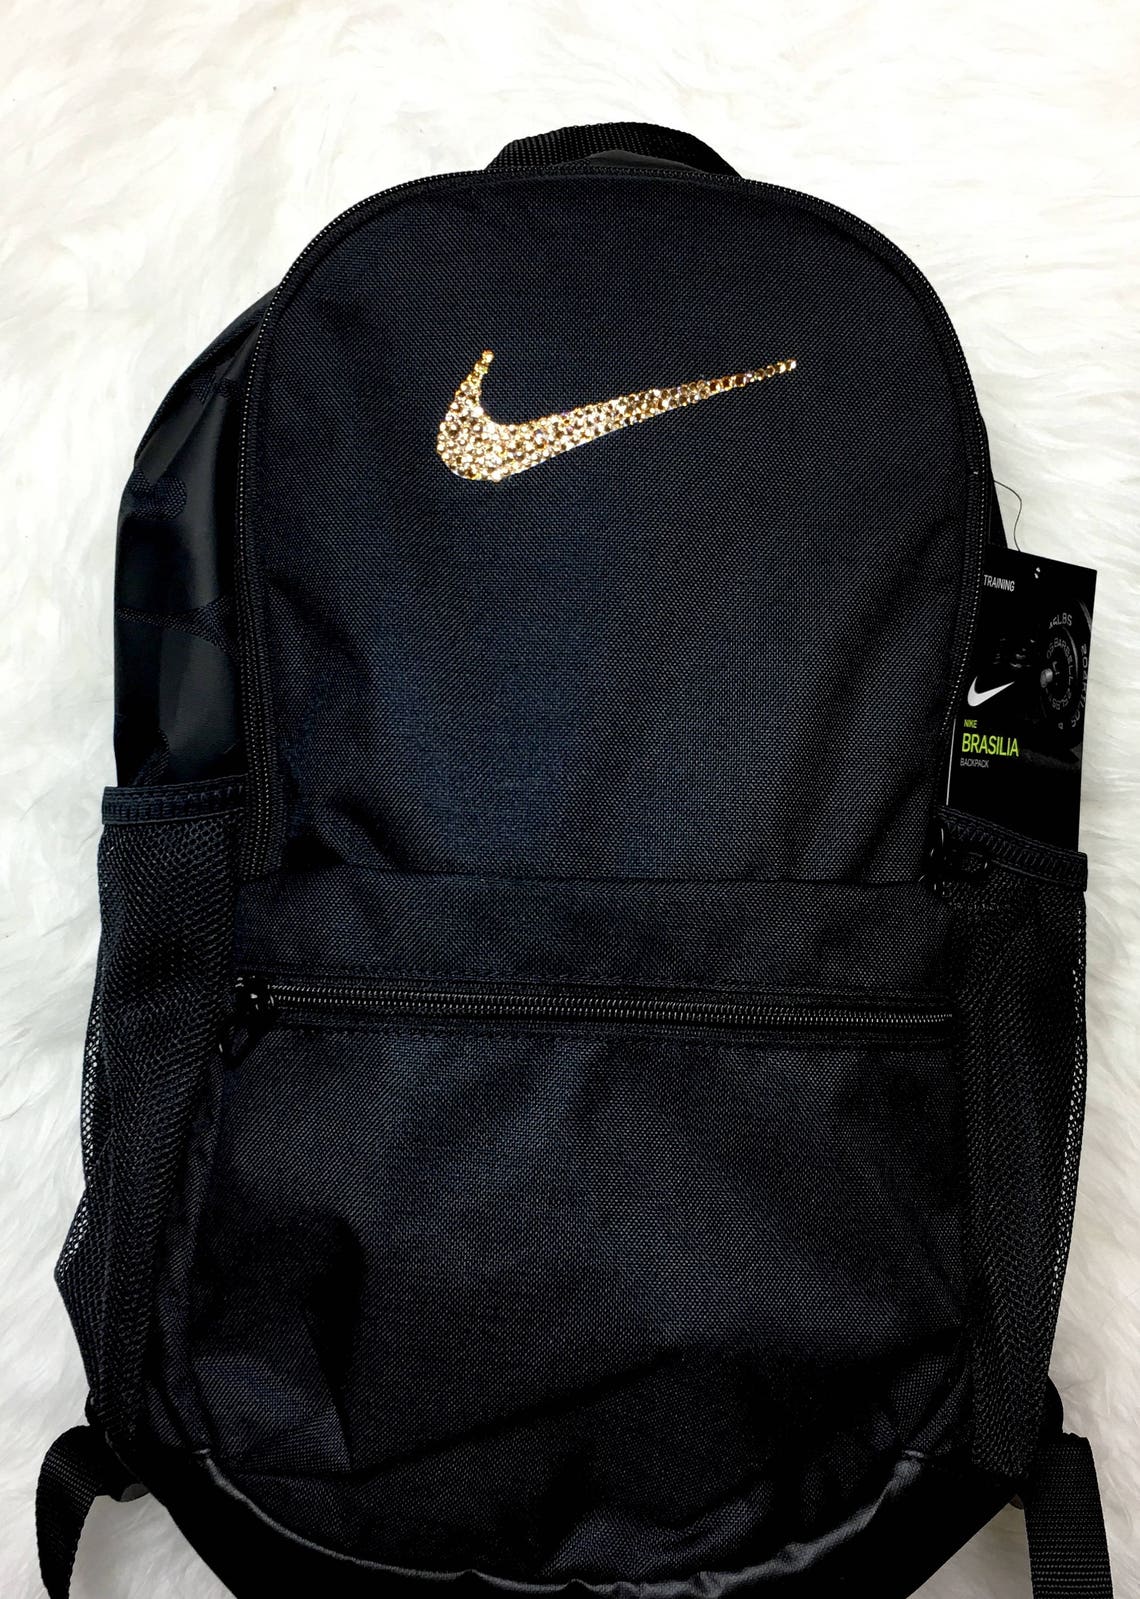 Bling Nike Brasilia Training Backpack Embellished With | Etsy